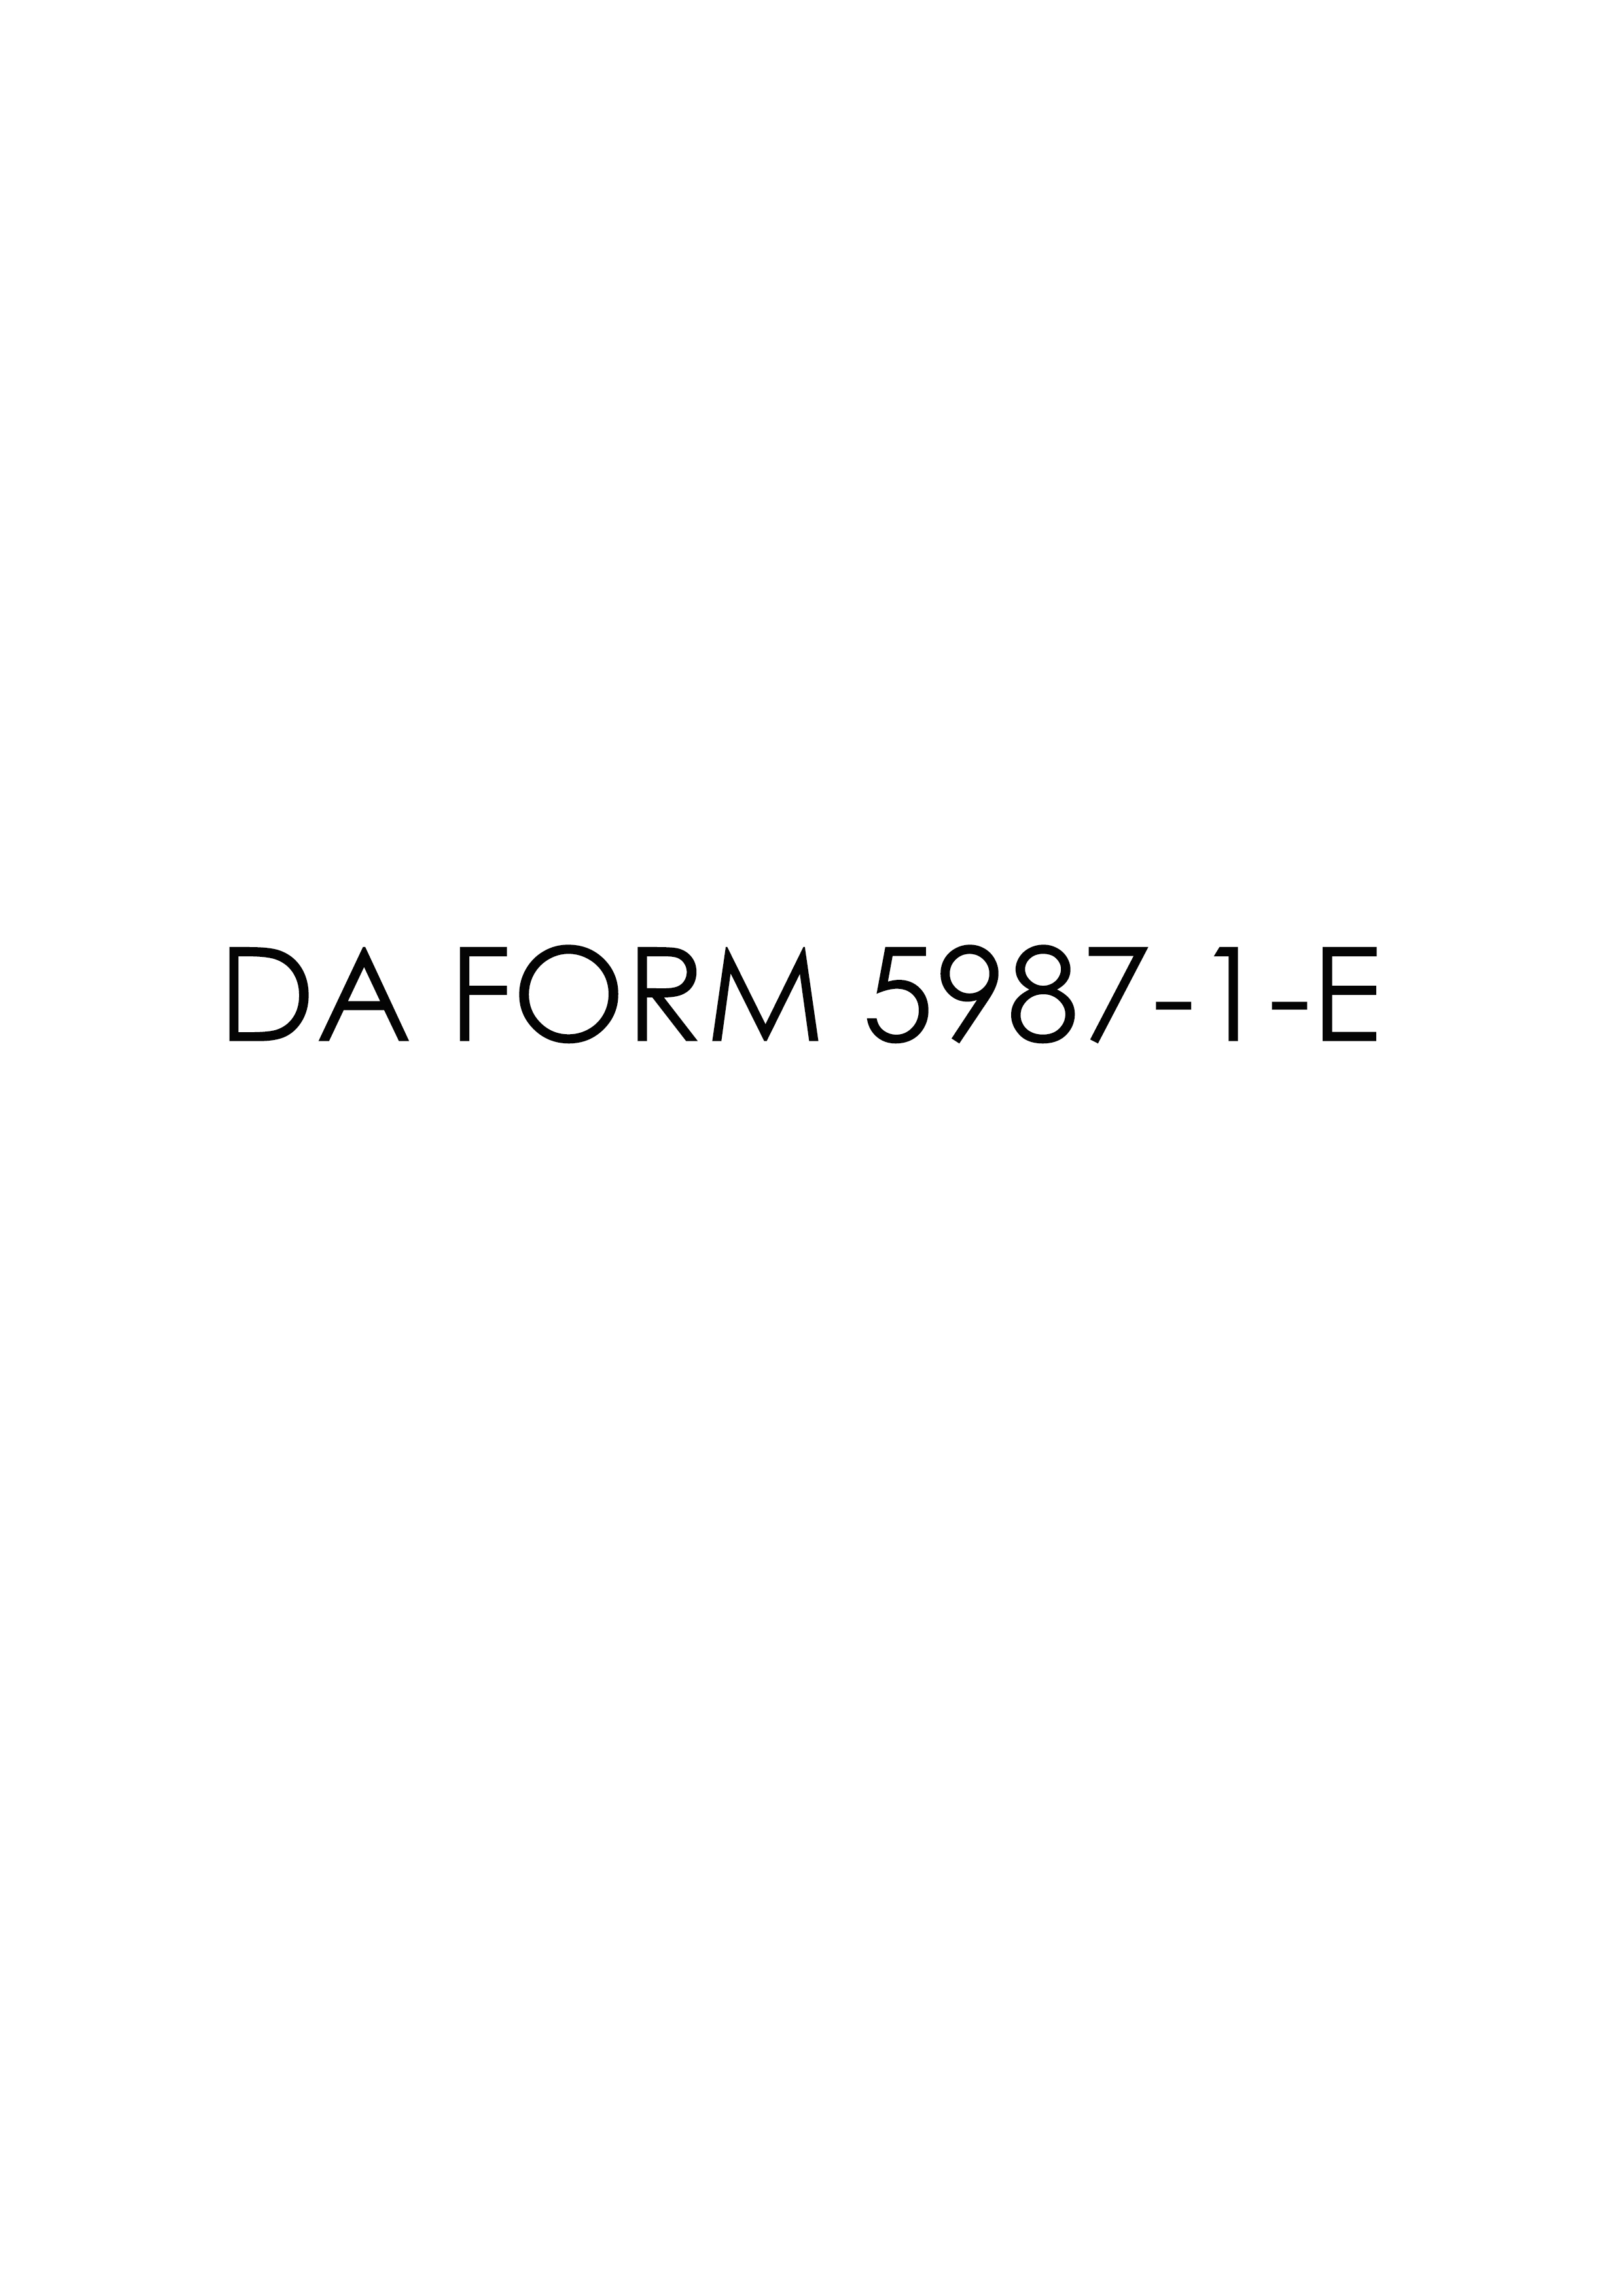 Download Fillable da Form 5987-1-E